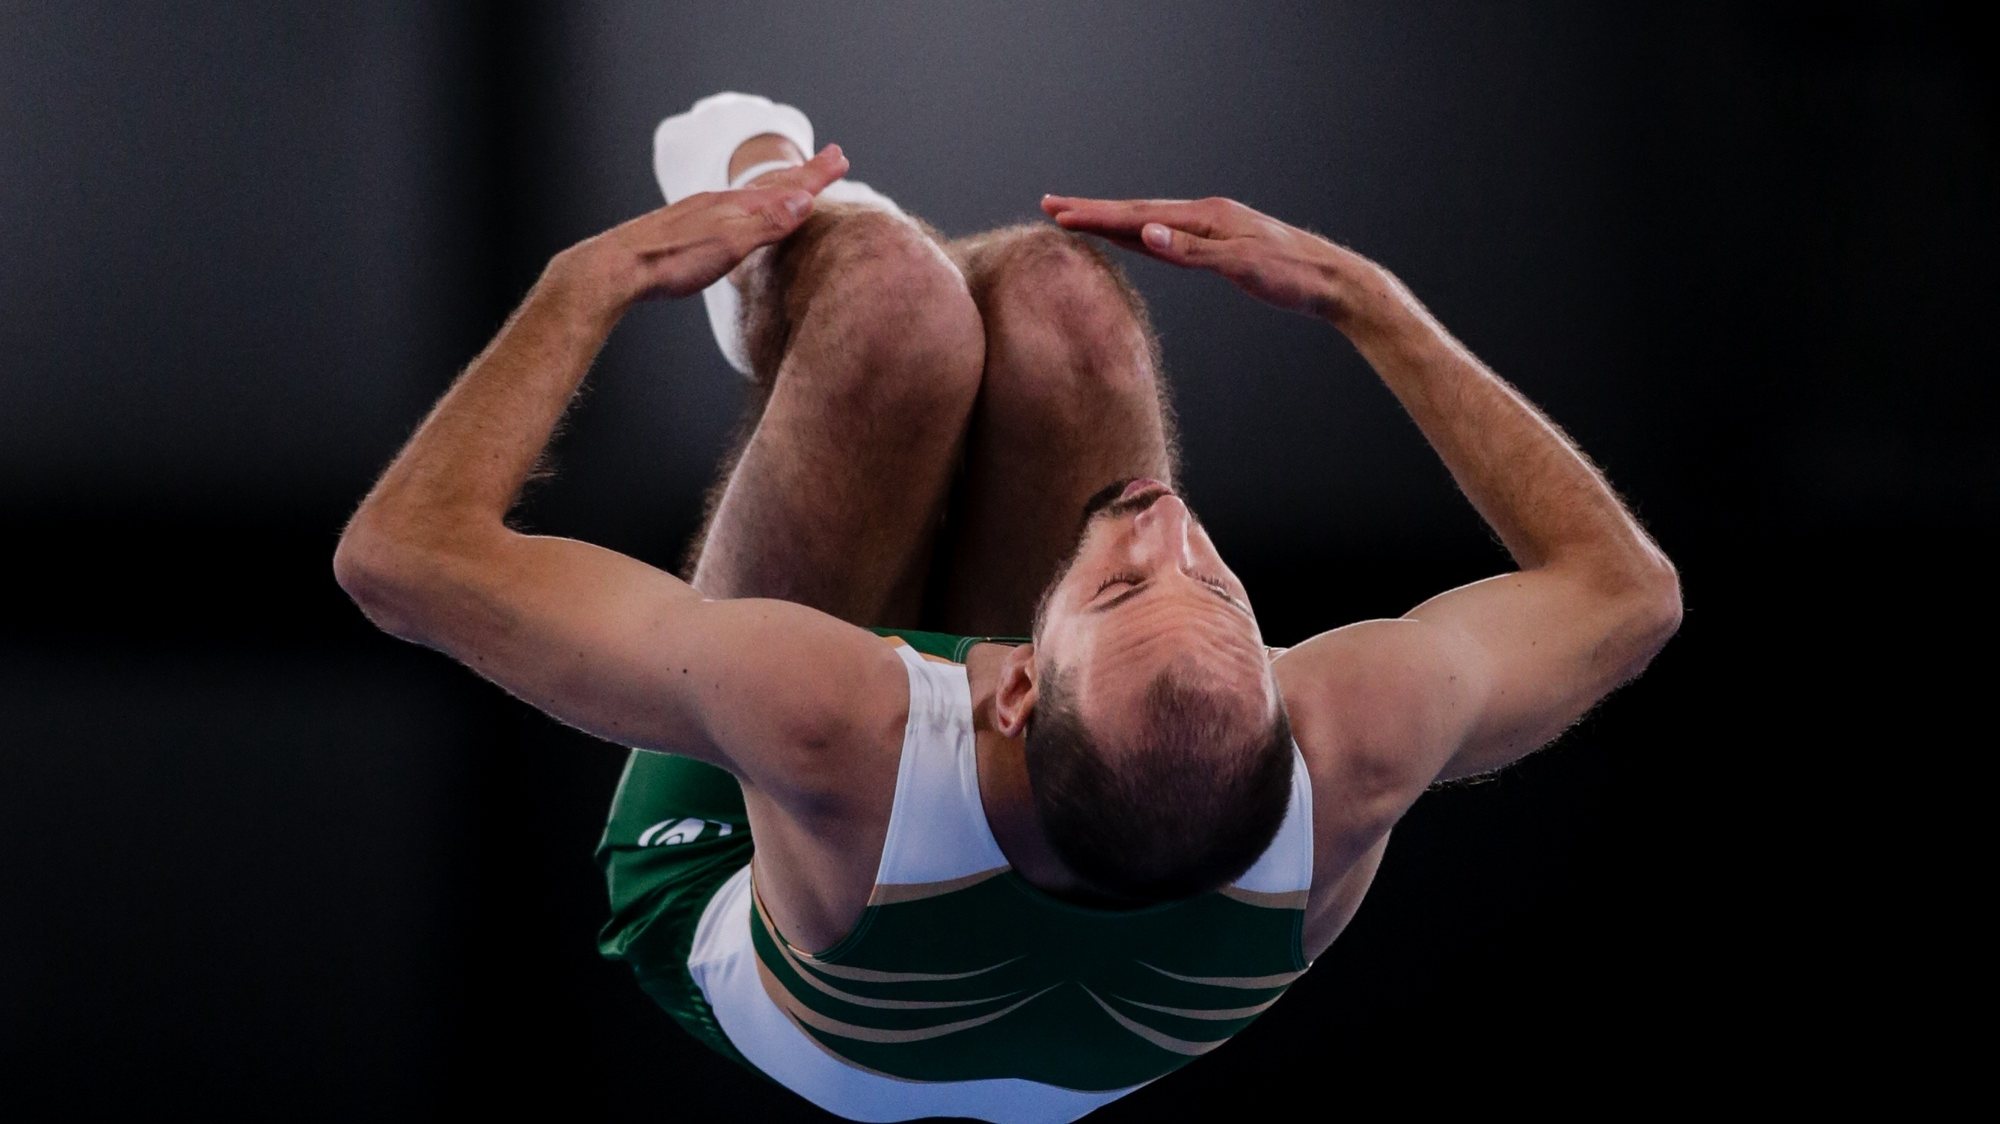 O ginasta português, Diogo Abreu, em ação na prova de qualificação de Ginástica de Trampolins dos Jogos Olímpicos de Tóquio2020, no Centro de Ginástica de Ariake em Tóquio, Japão, 31 de julho de 2021. TIAGO PETINGA/LUSA